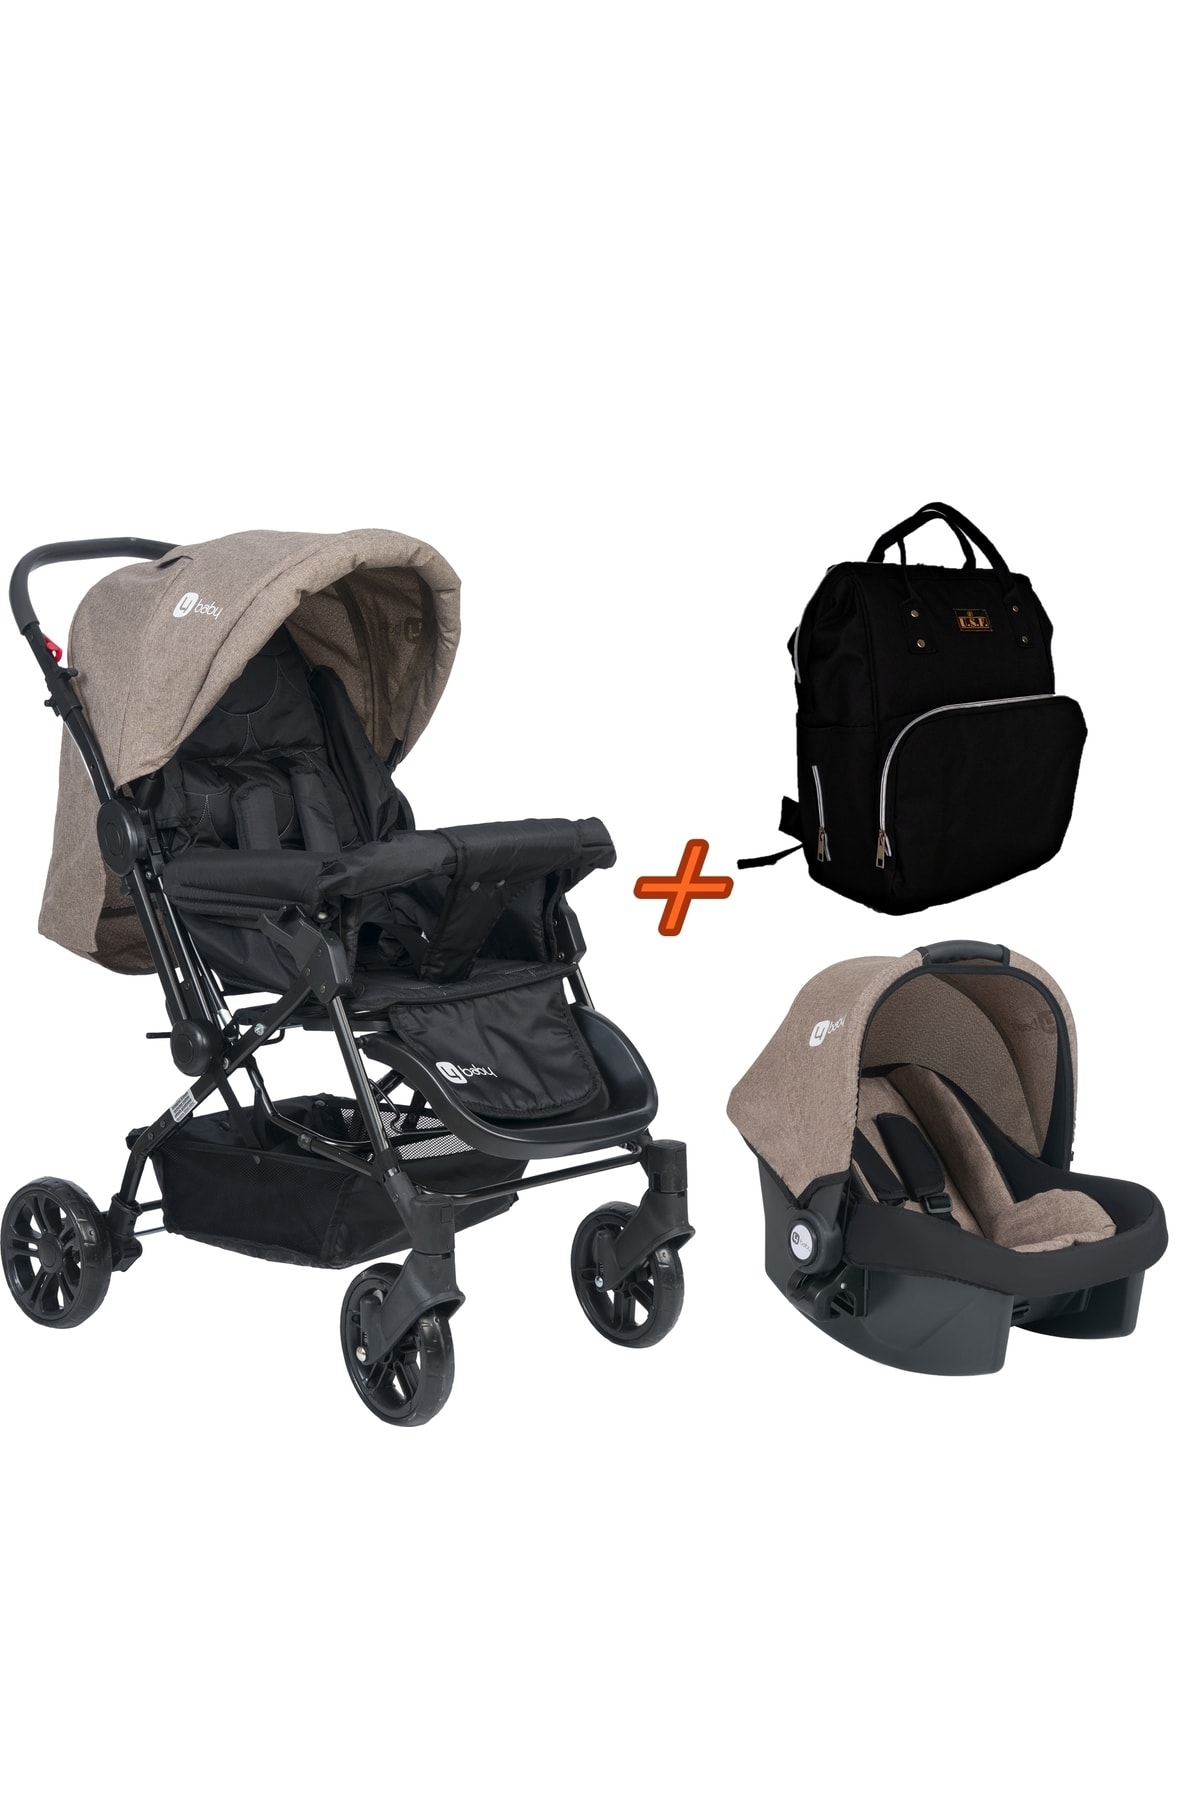 USF Travel Sistem Çift Yönlü Bebek Arabası 4 Baby